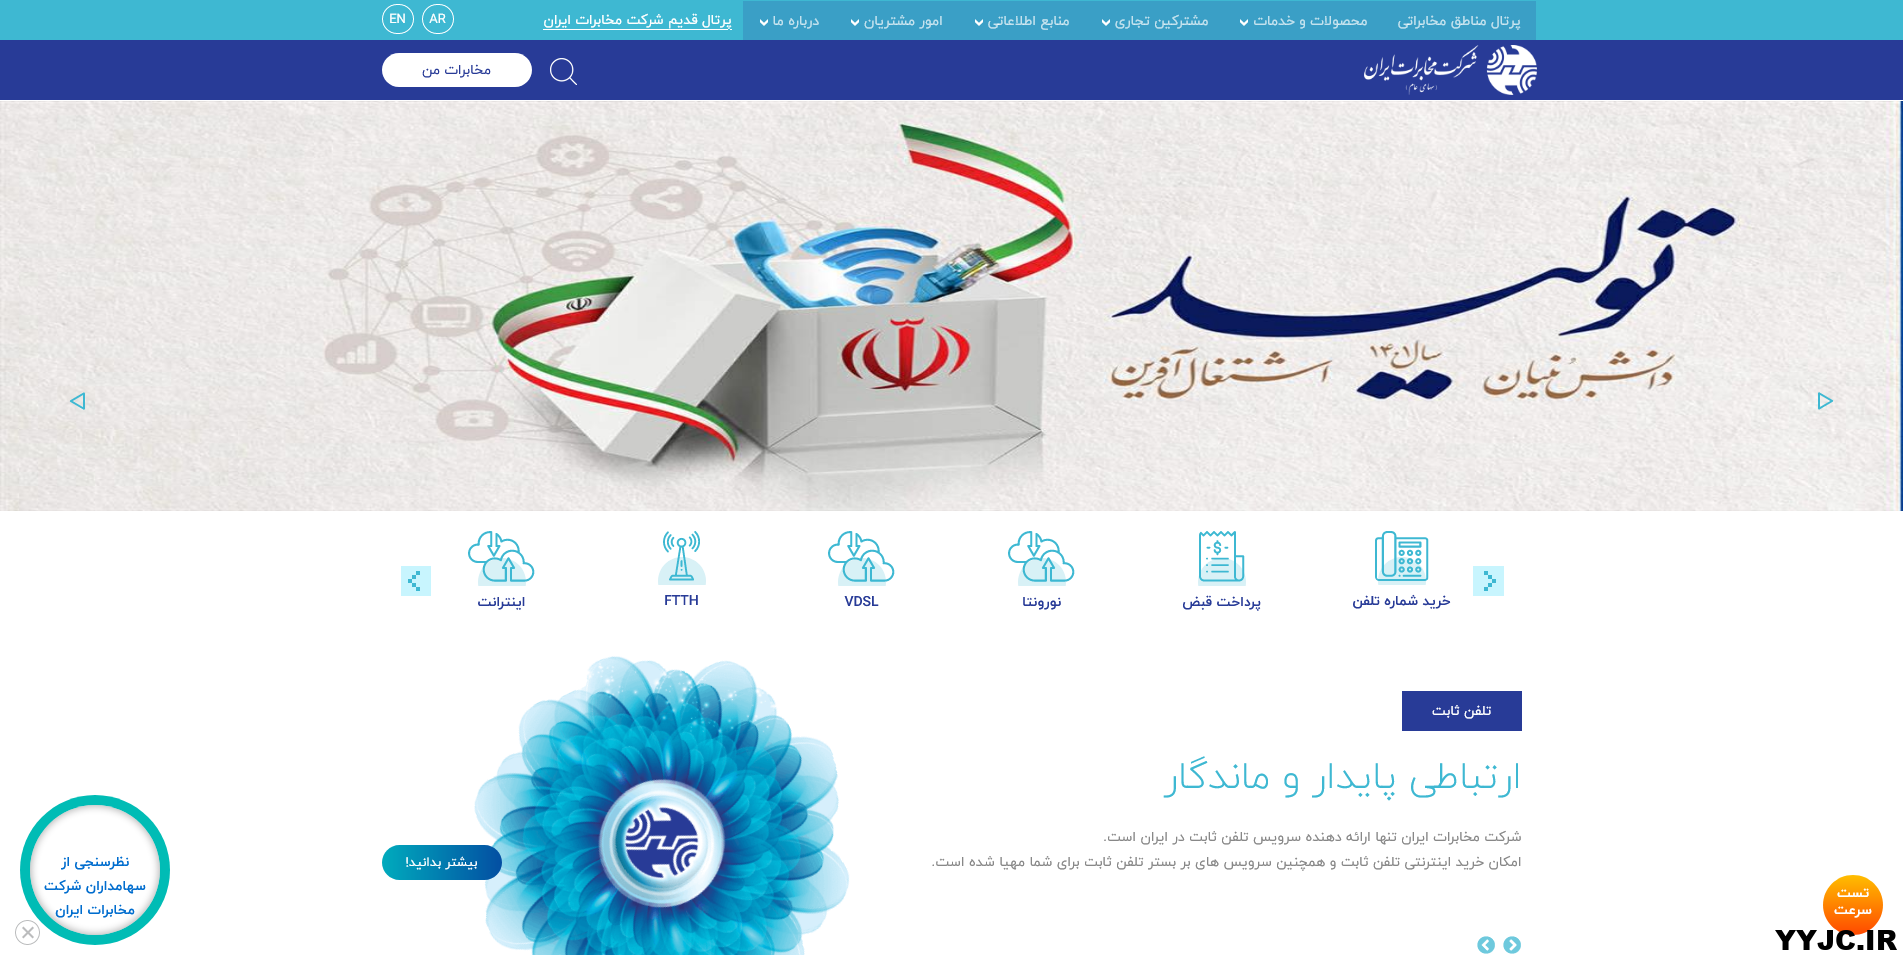 پرداخت قبض تلفن ثابت در سایت / www.tci.ir / شرکت مخابرات ایران